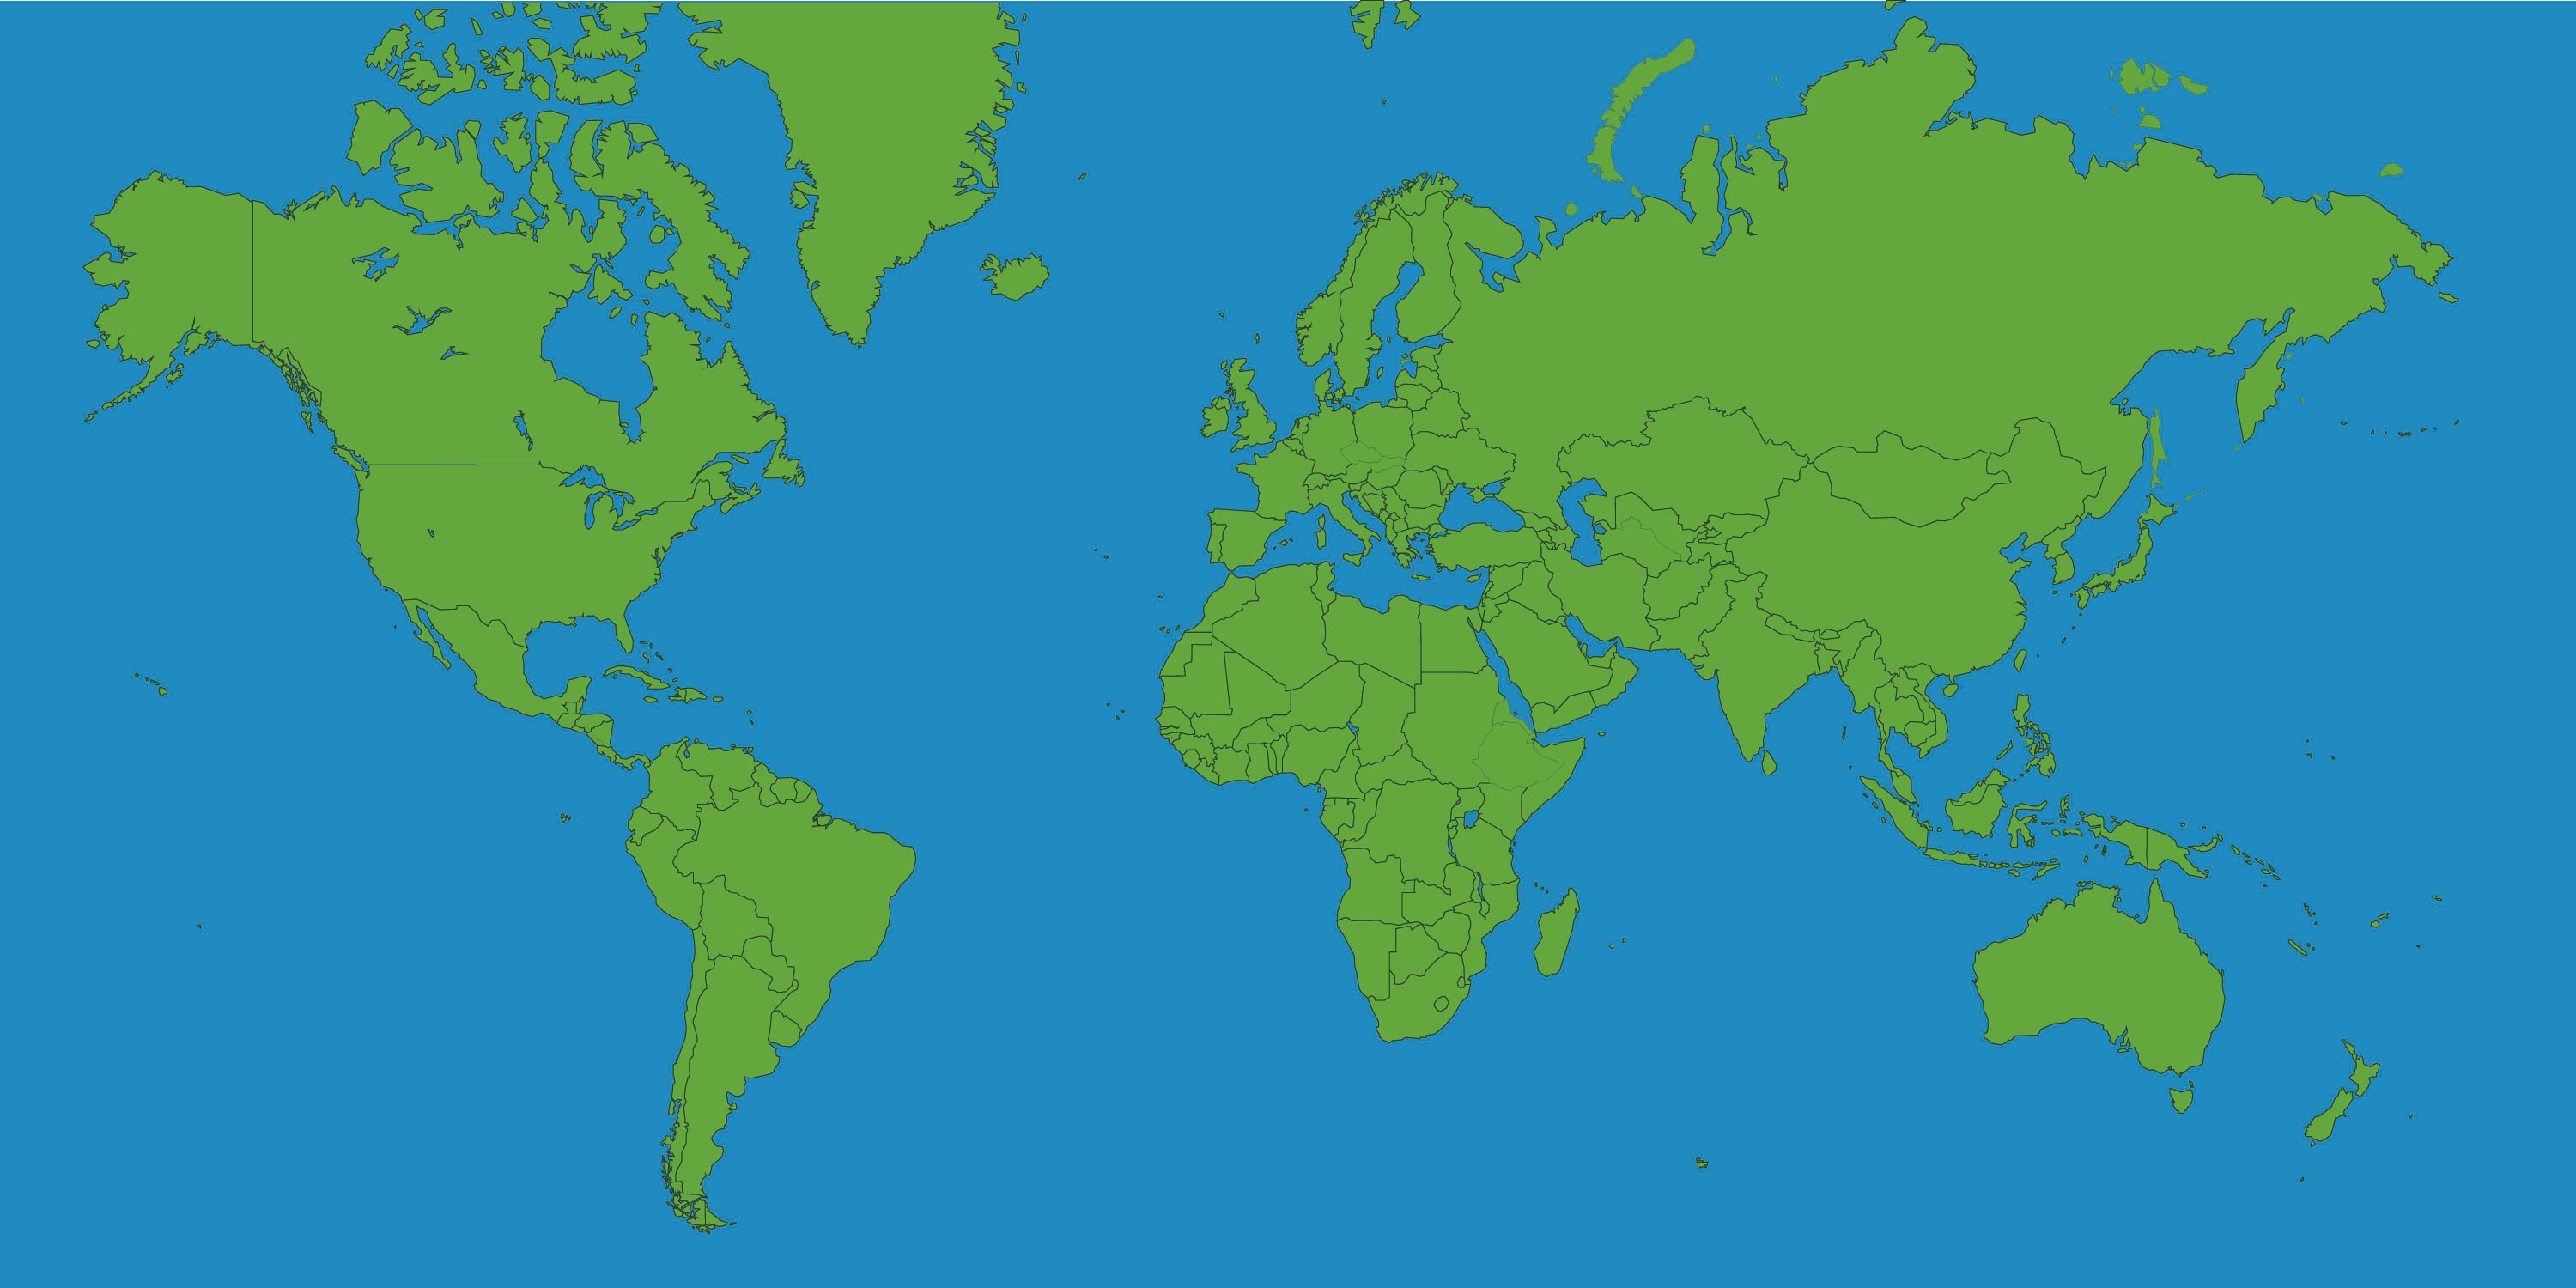 World Map Fotolip